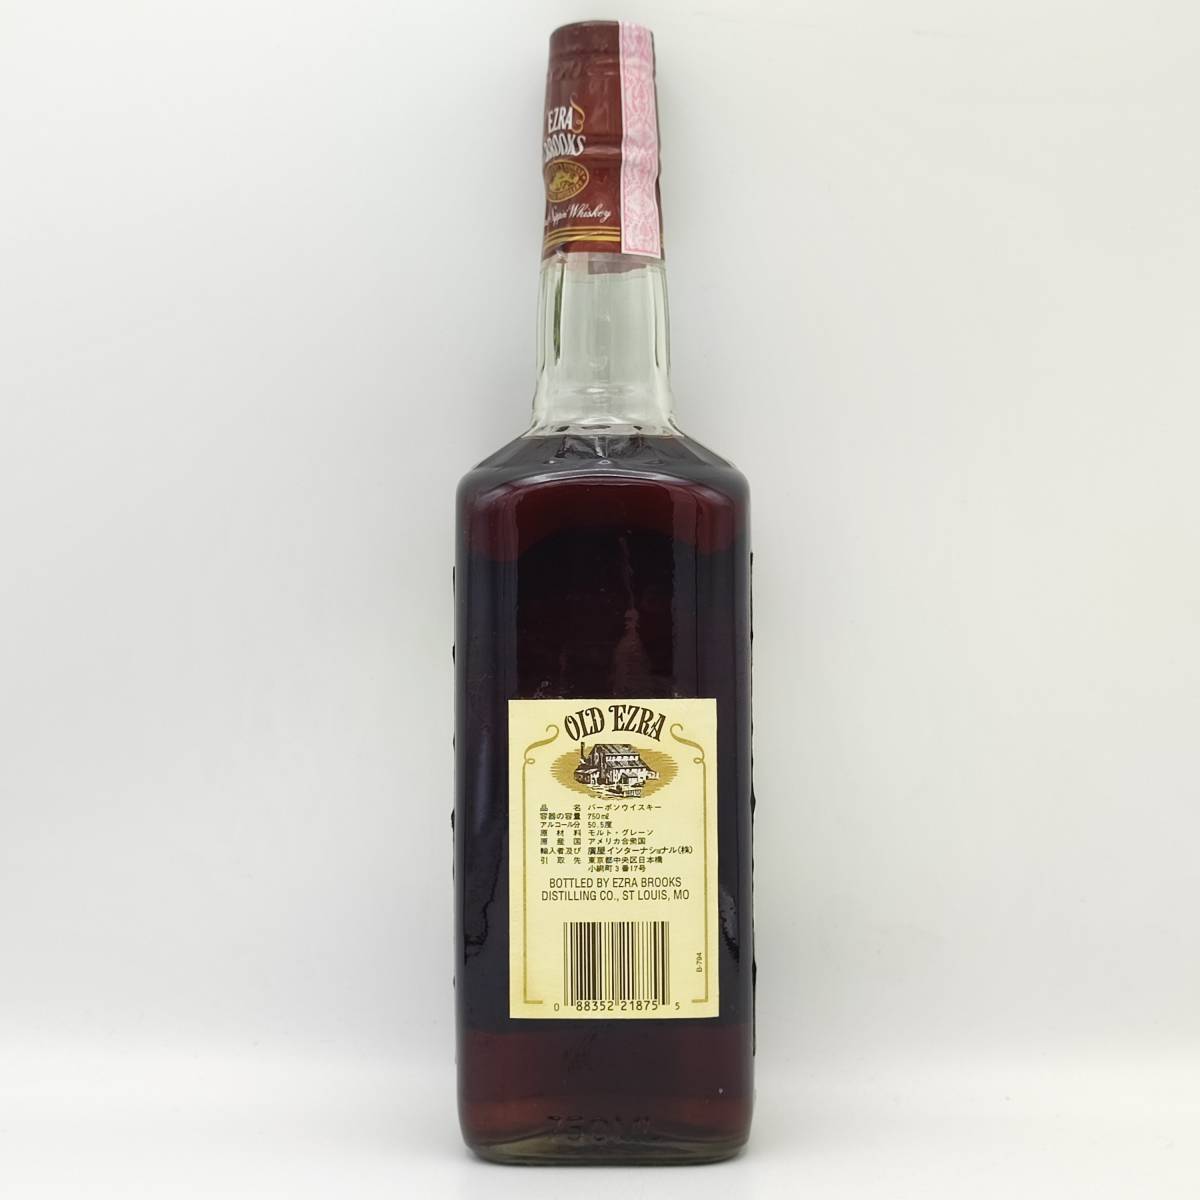 【全国送料無料】OLD EZRA 15years old GENUINE SOUR MASH Kentucky Straight Bourbon Whiskey 50.5度 750ml【廣屋インターナショナル】の画像3